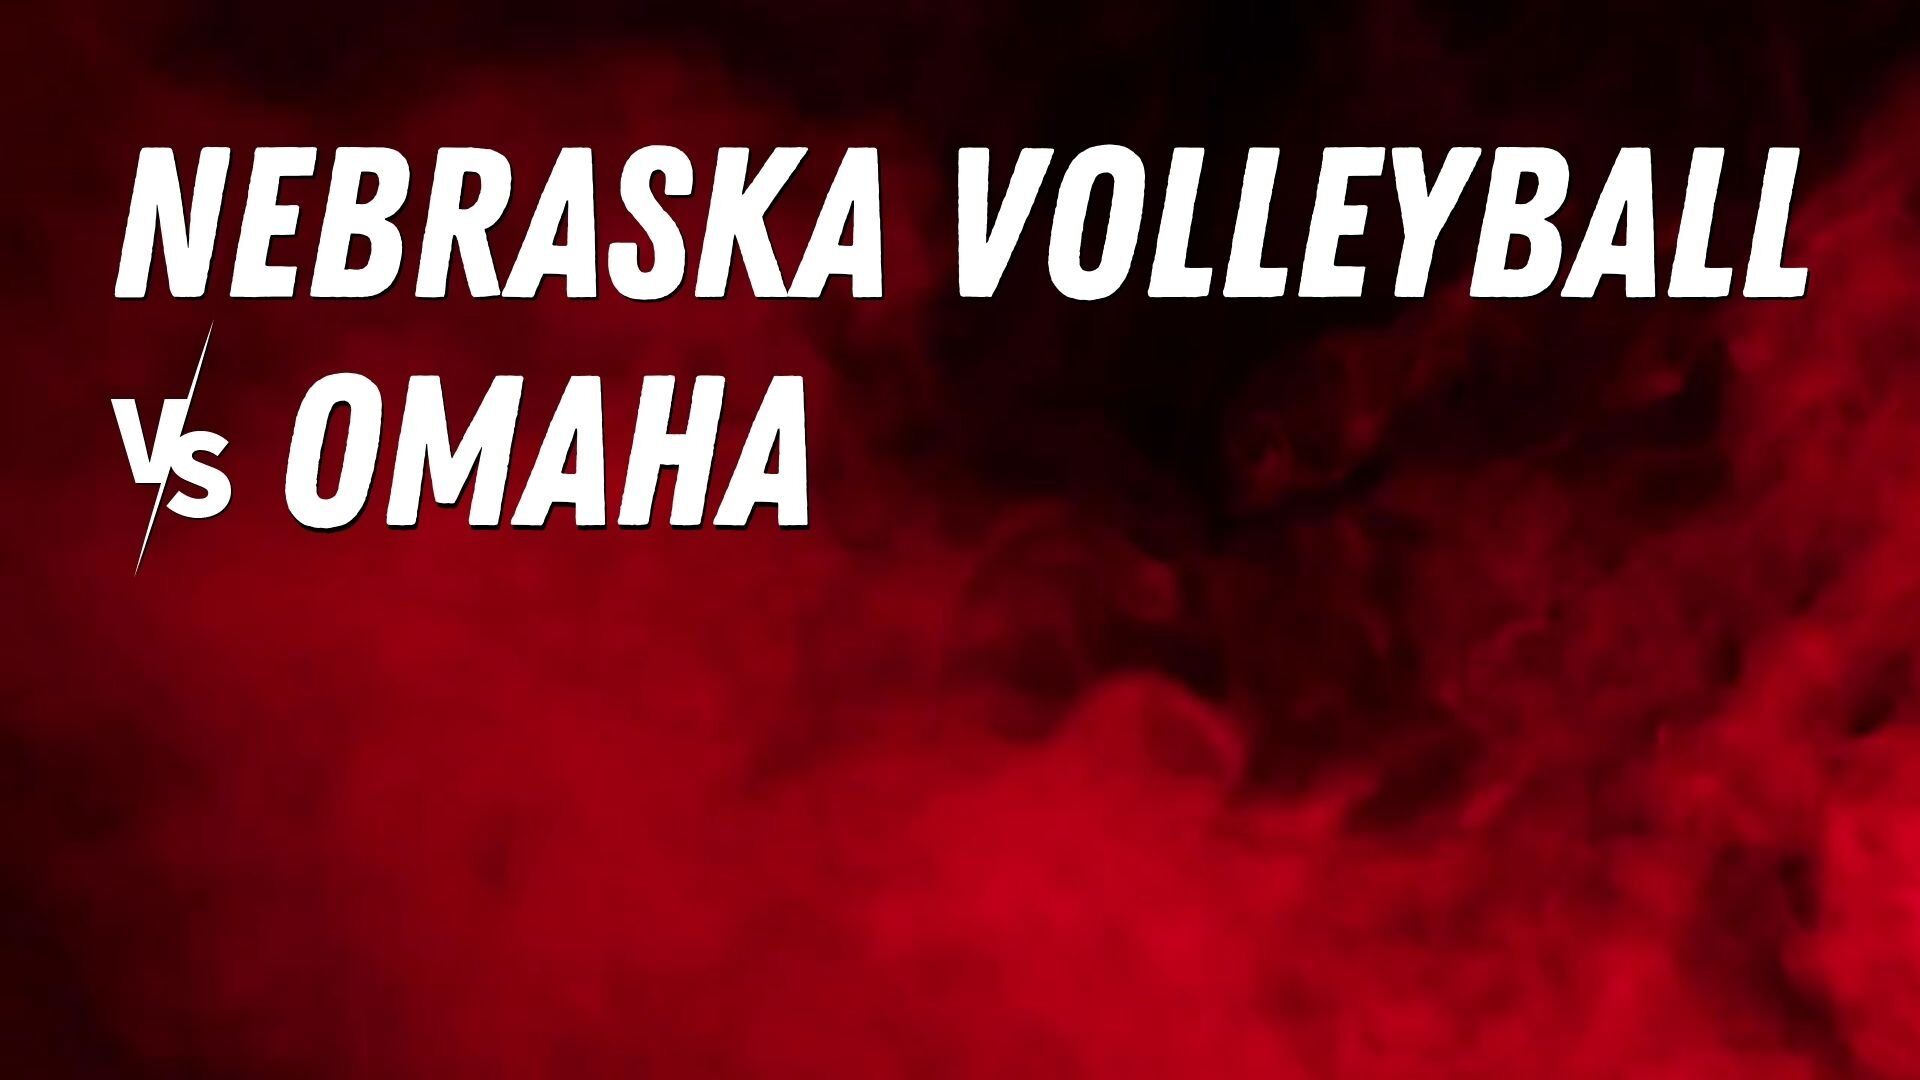 Nebraska volleyball vs